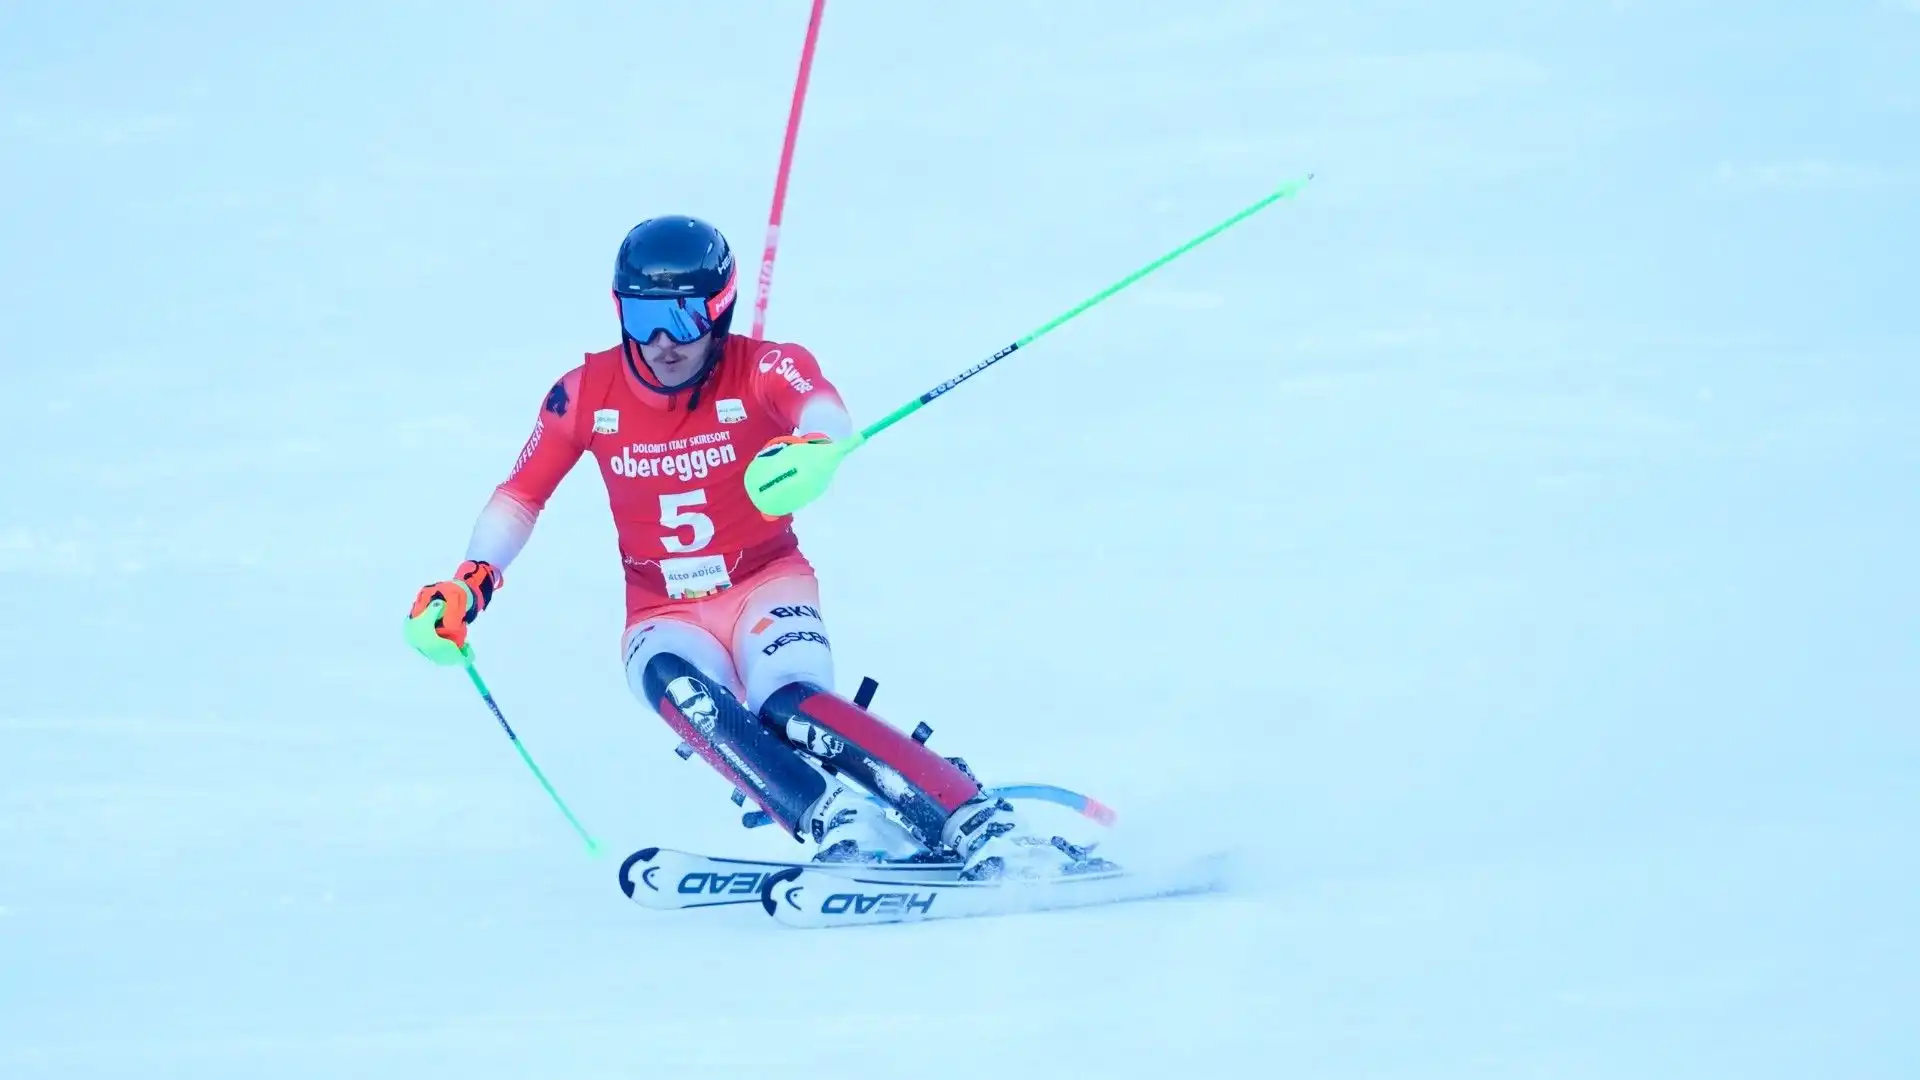 E' il primo vincitore svizzero a Obereggen dopo Loic Meillard nel 2016